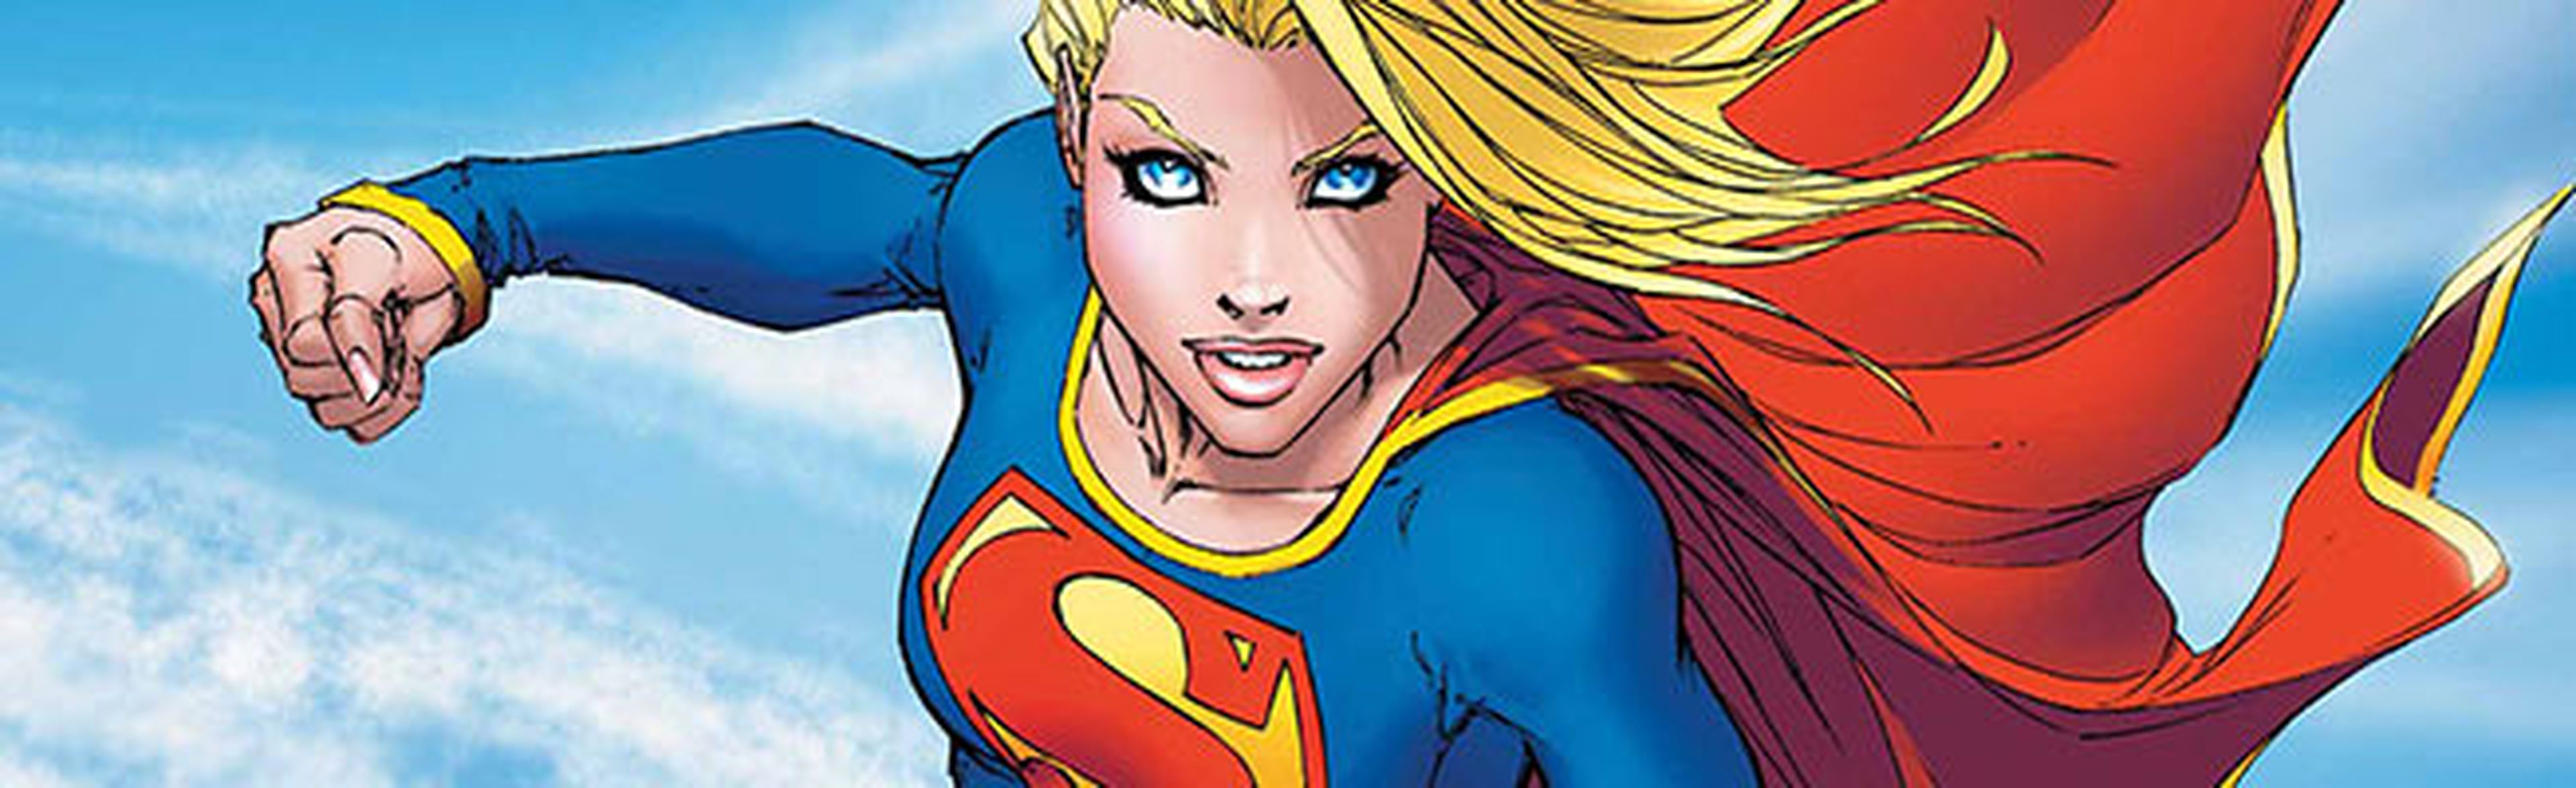 Supergirl tendrá serie de televisión